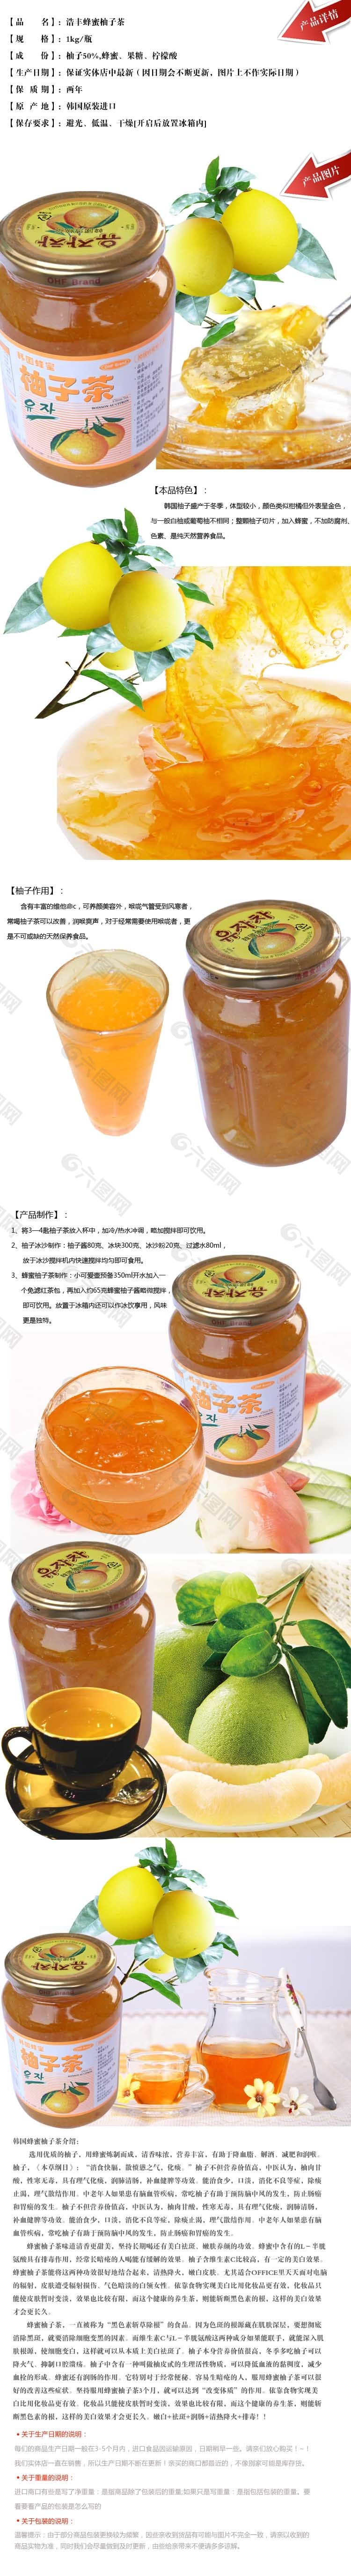 韩国蜂蜜柚子茶详情页